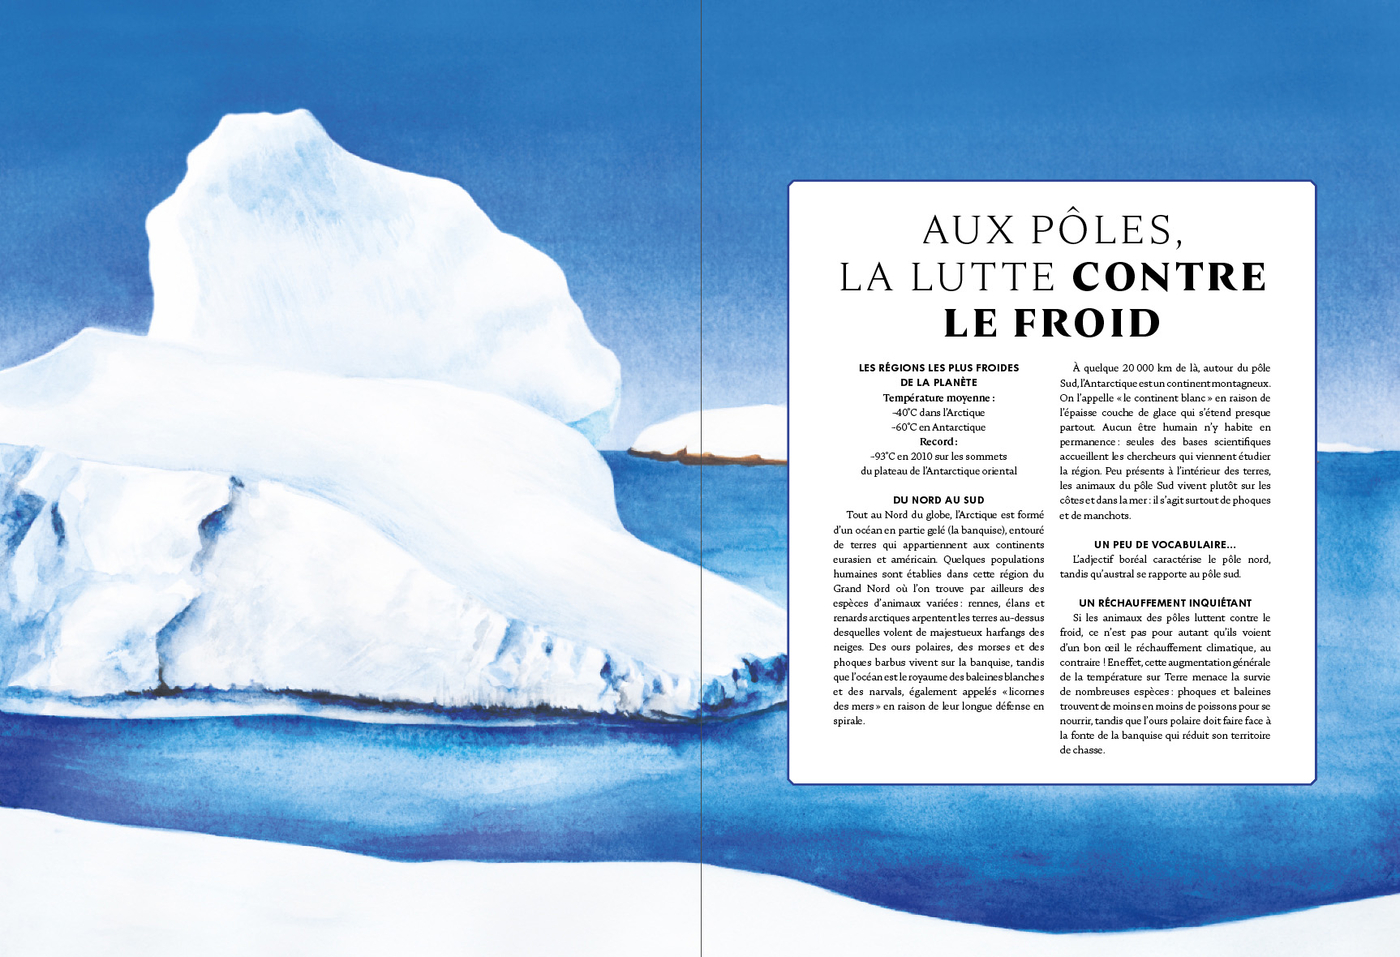 Planche illustrant et décrivant les effets du changement climatique sur les espèces vivant aux pôles